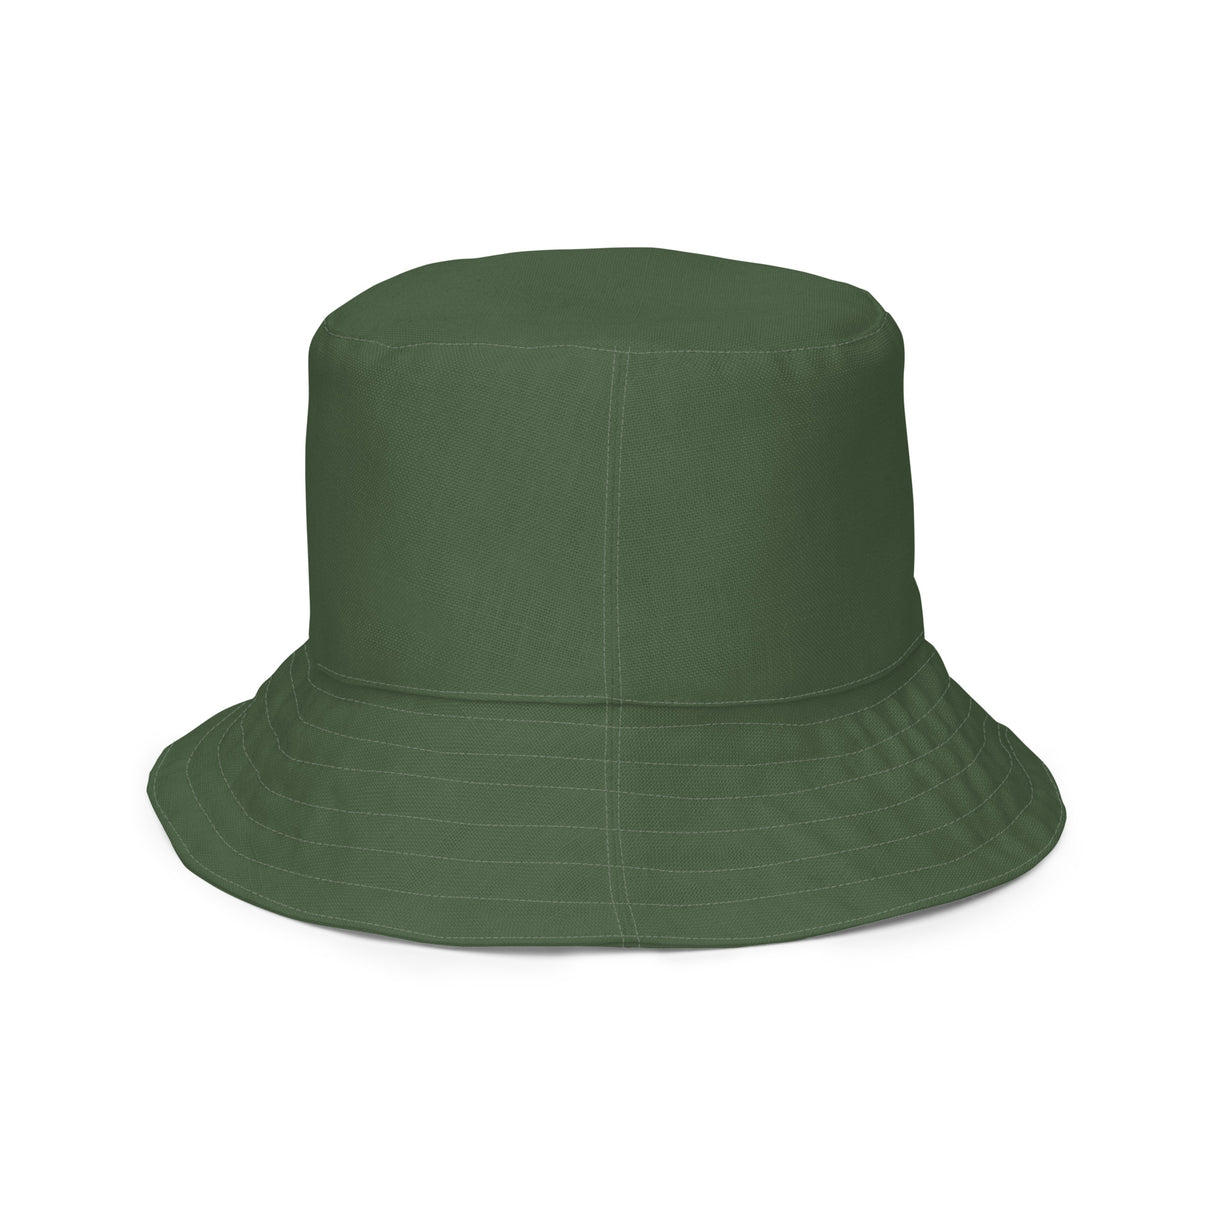 GTTFG Bucket Hat